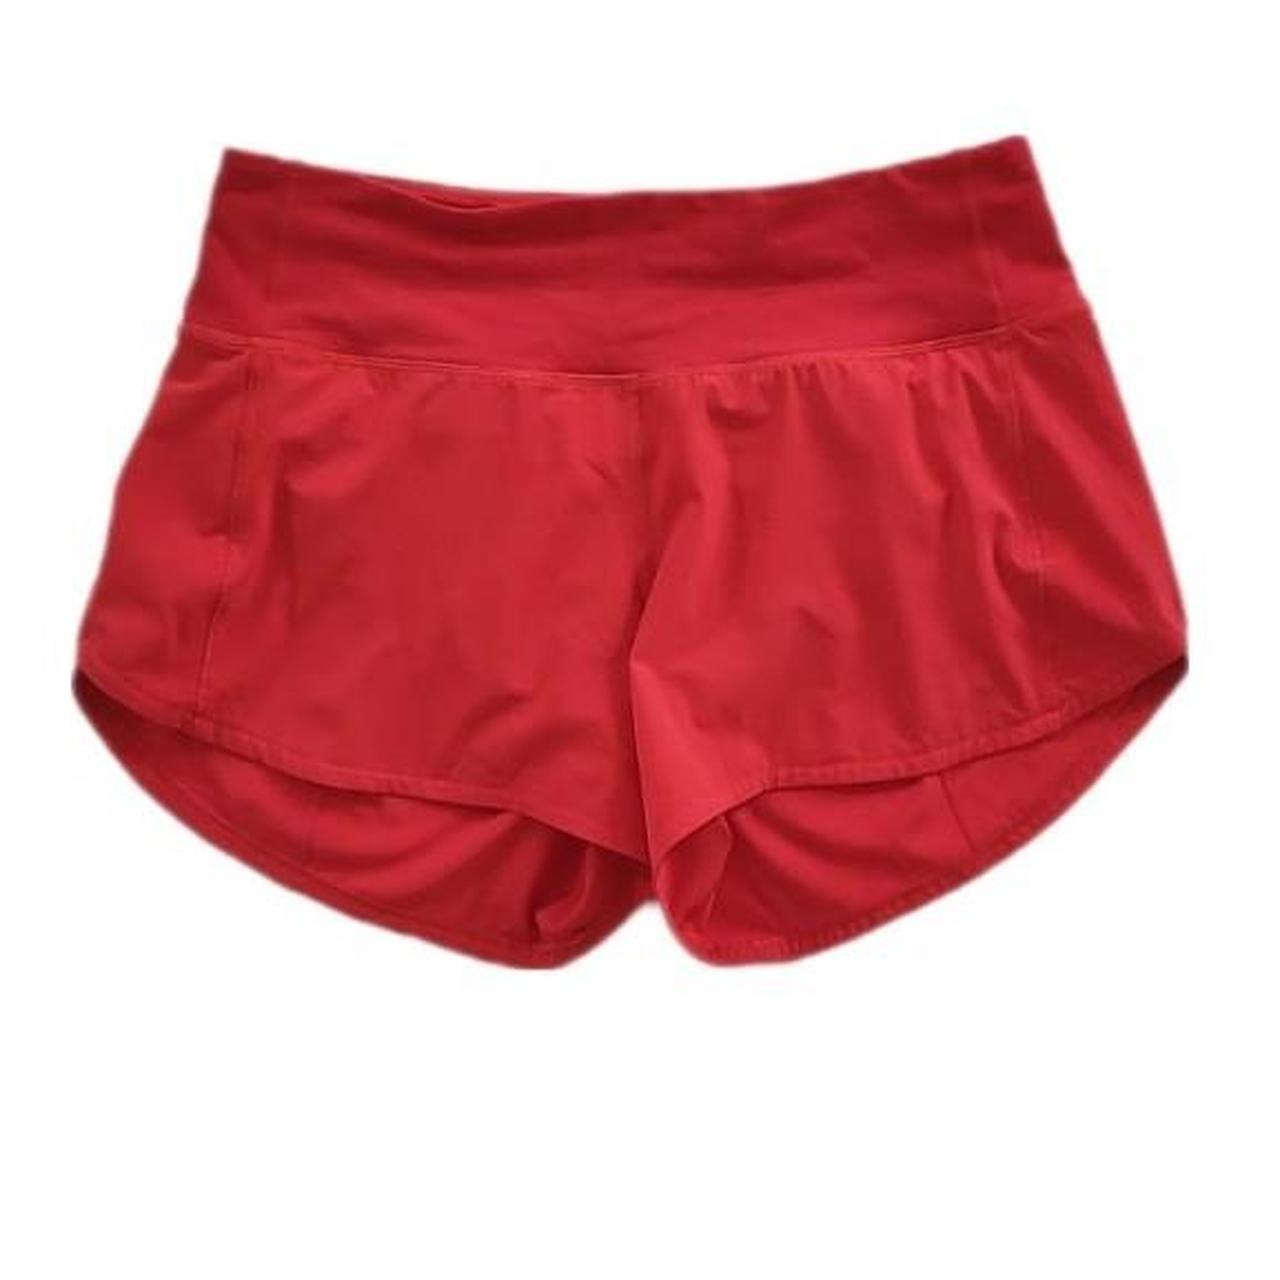 Lululemon Speed Up Shorts size 6 Mid-Rise 4” - Depop